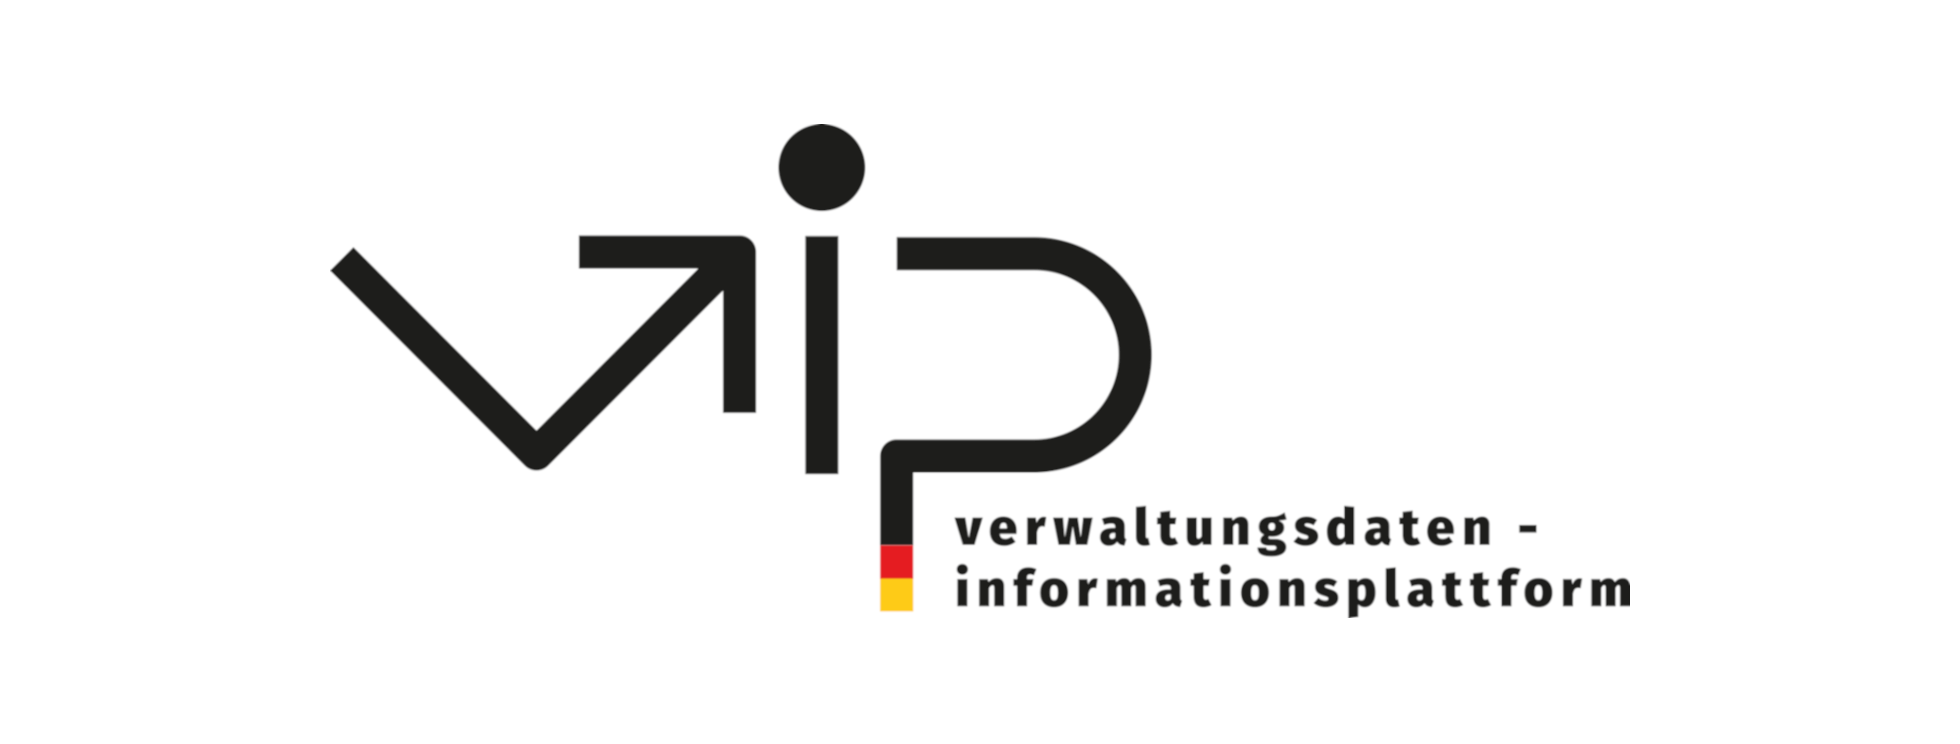 Logo der Verwaltungsdateninformationsplattform